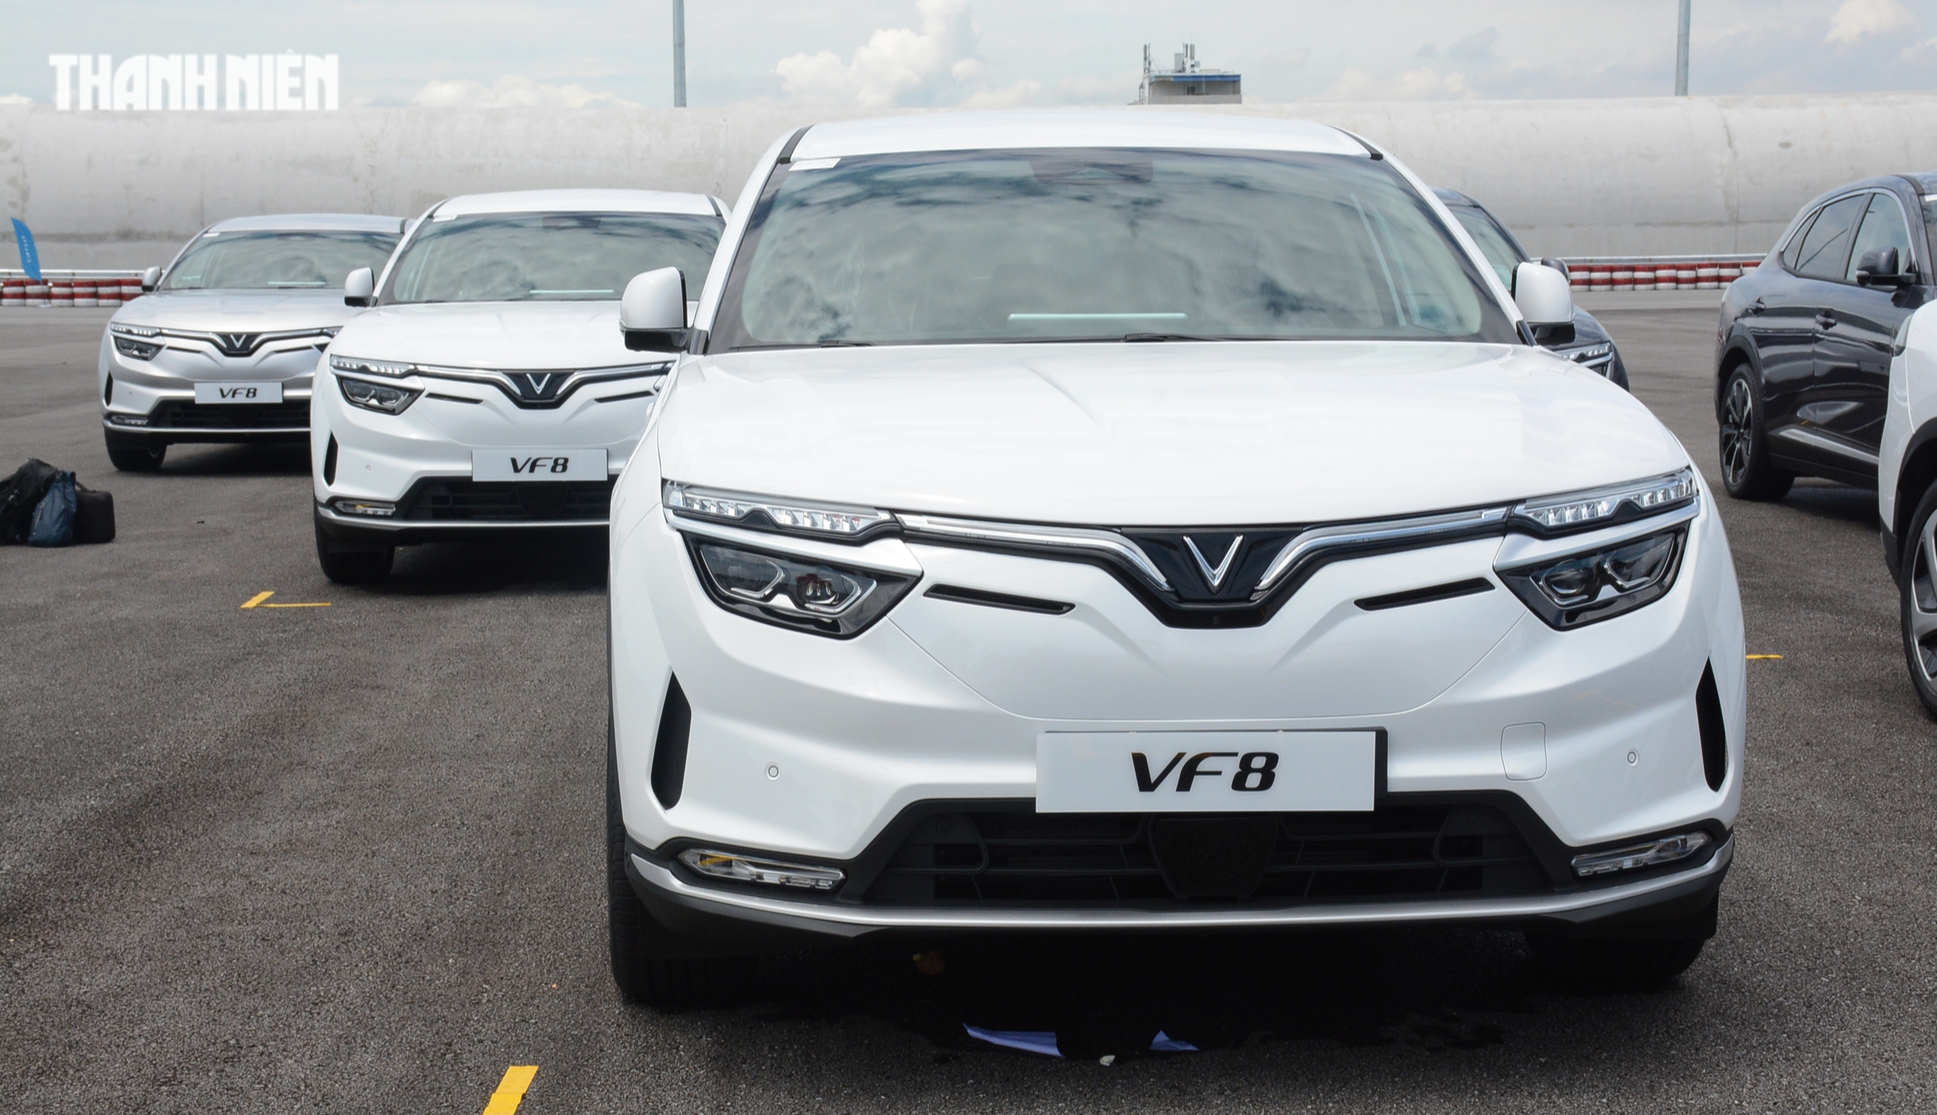 Ô tô điện VinFast VF 8 bị lỗi phanh, triệu hồi gần 2.800 xe tại Việt Nam - Ảnh 1.